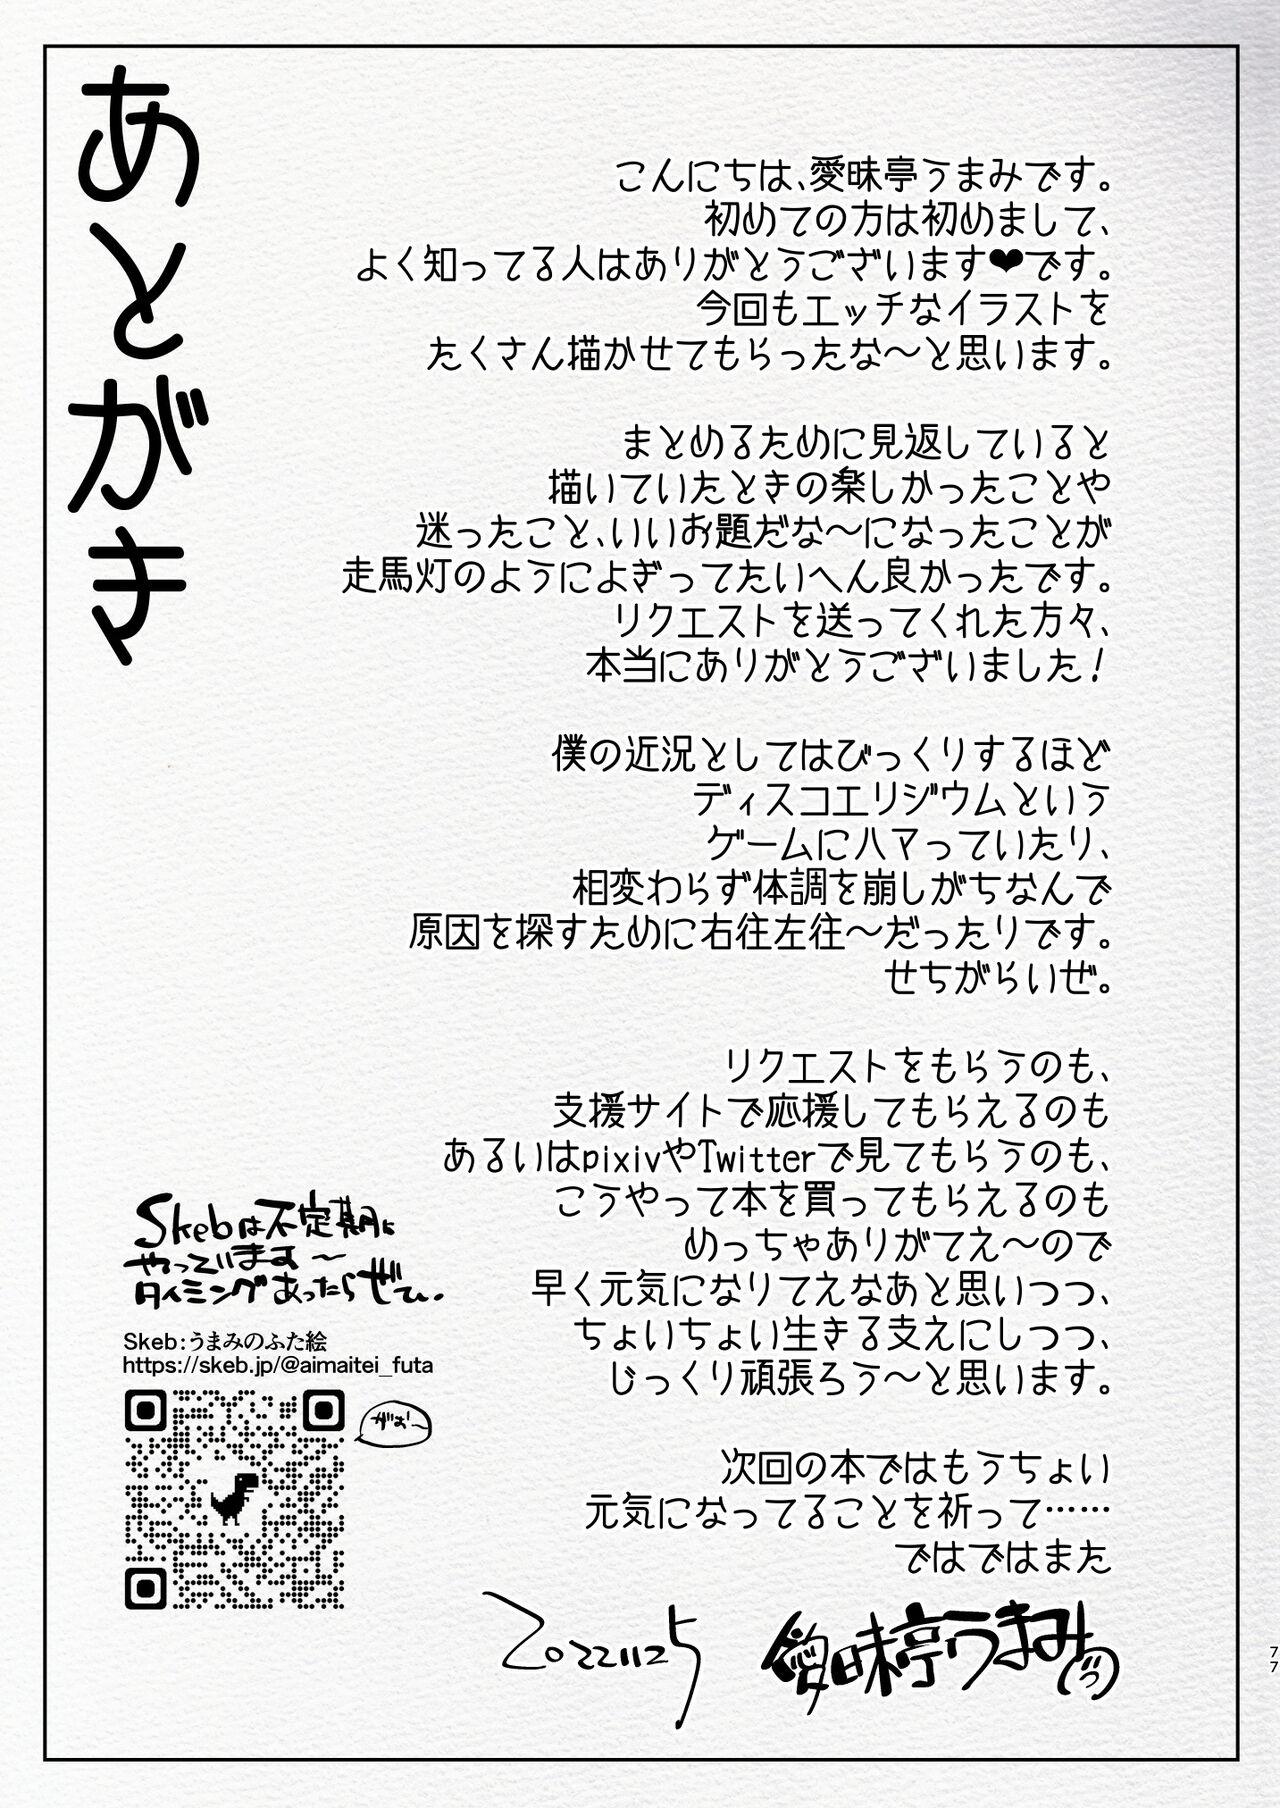 [Aimaitei (Aimaitei Umami)] Futanari Chuushin Sukebe E Matome 3 - Illustration of FUTANARI-Skeb.e 76